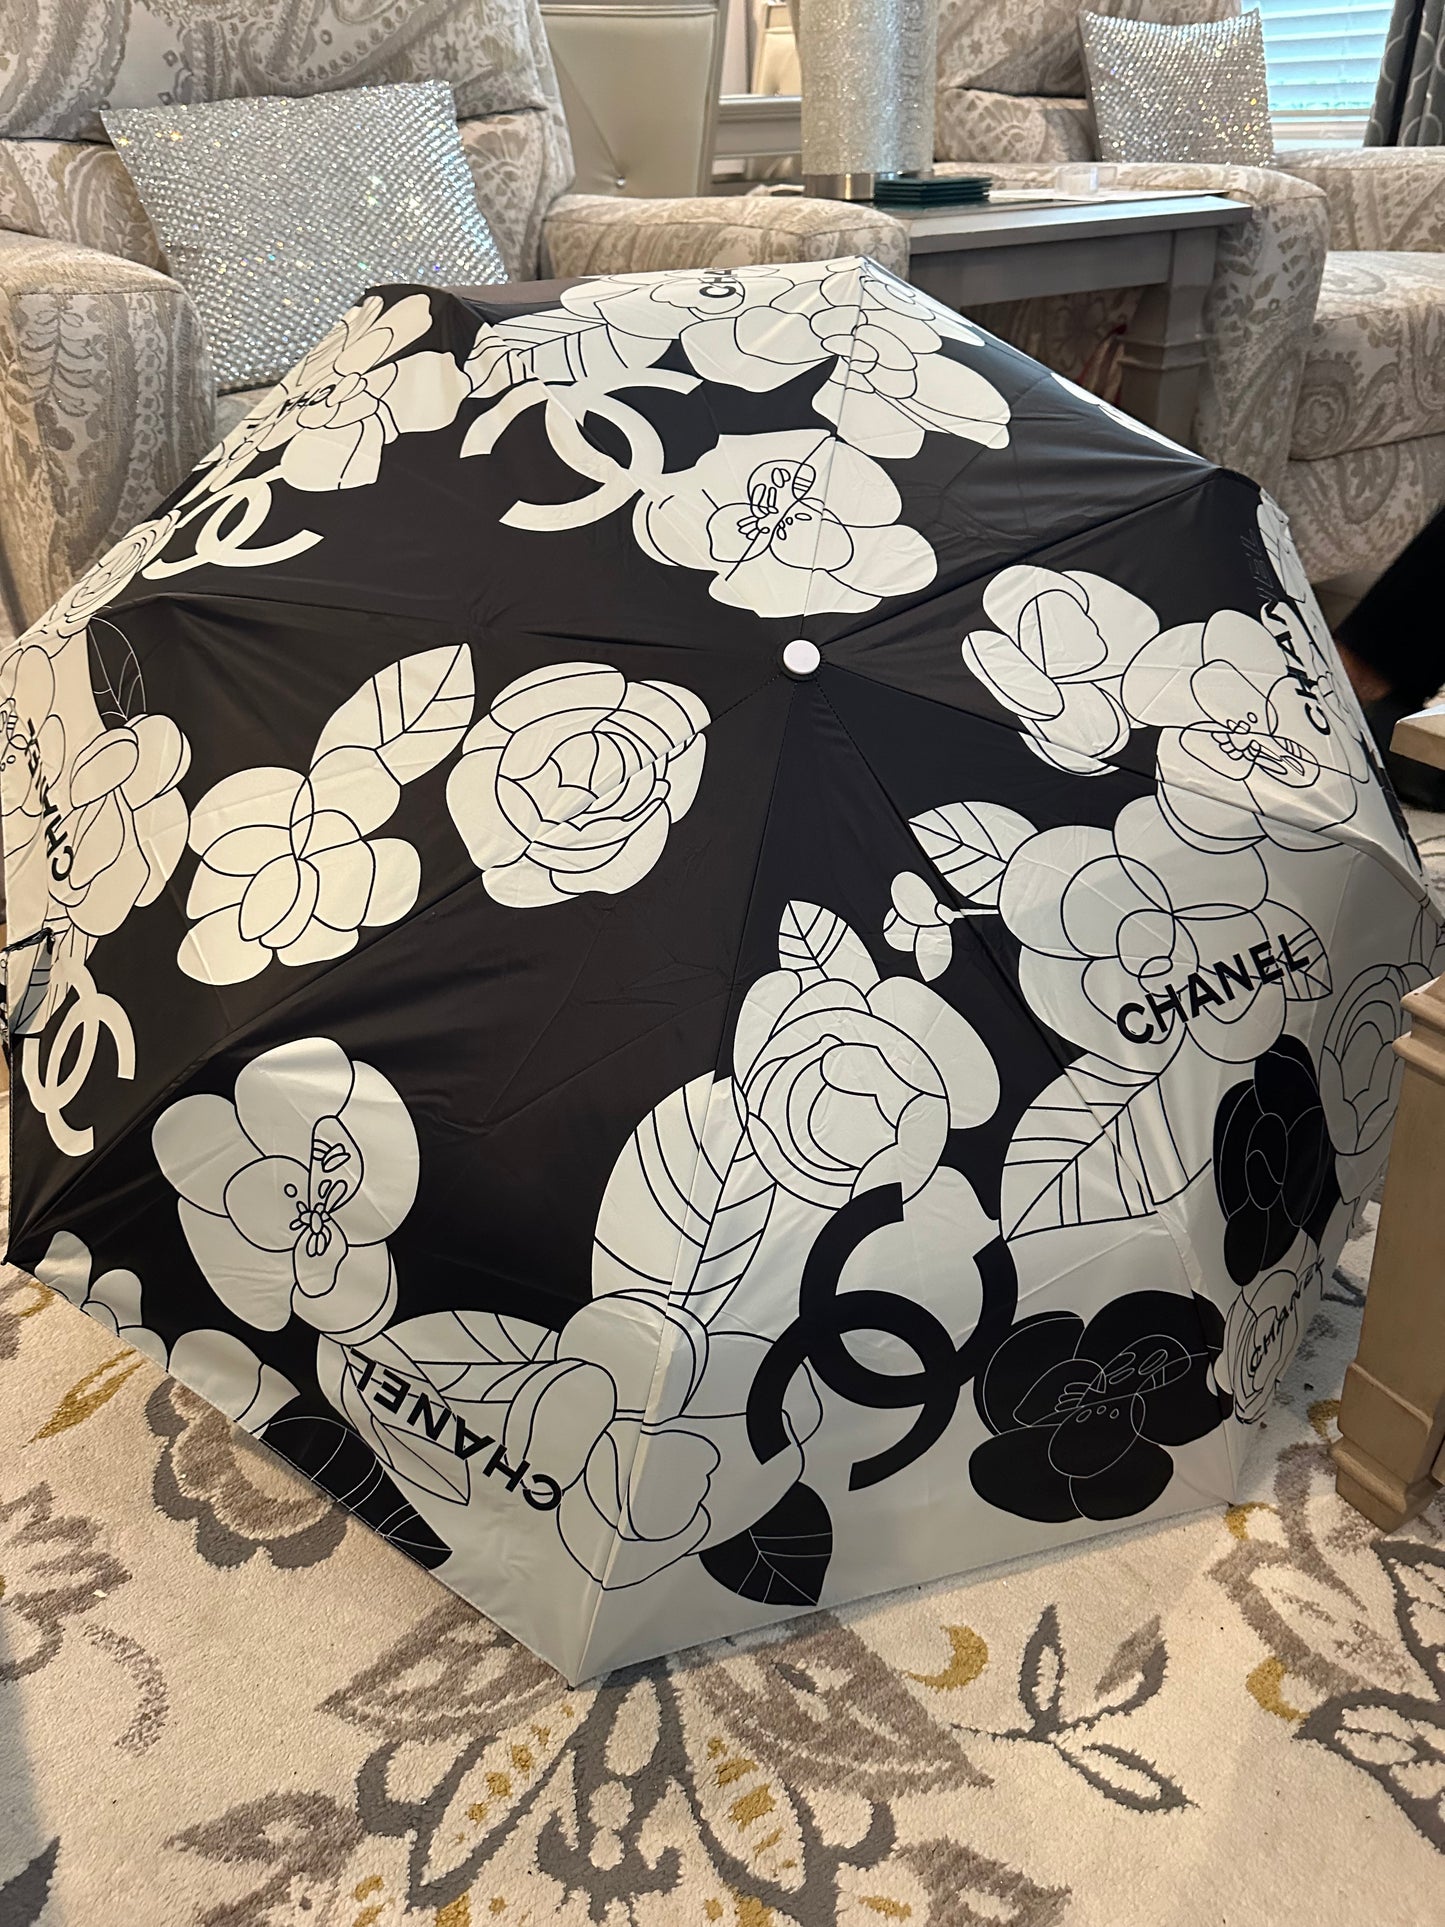 Accessories- Black and White CC Rose Umbrella